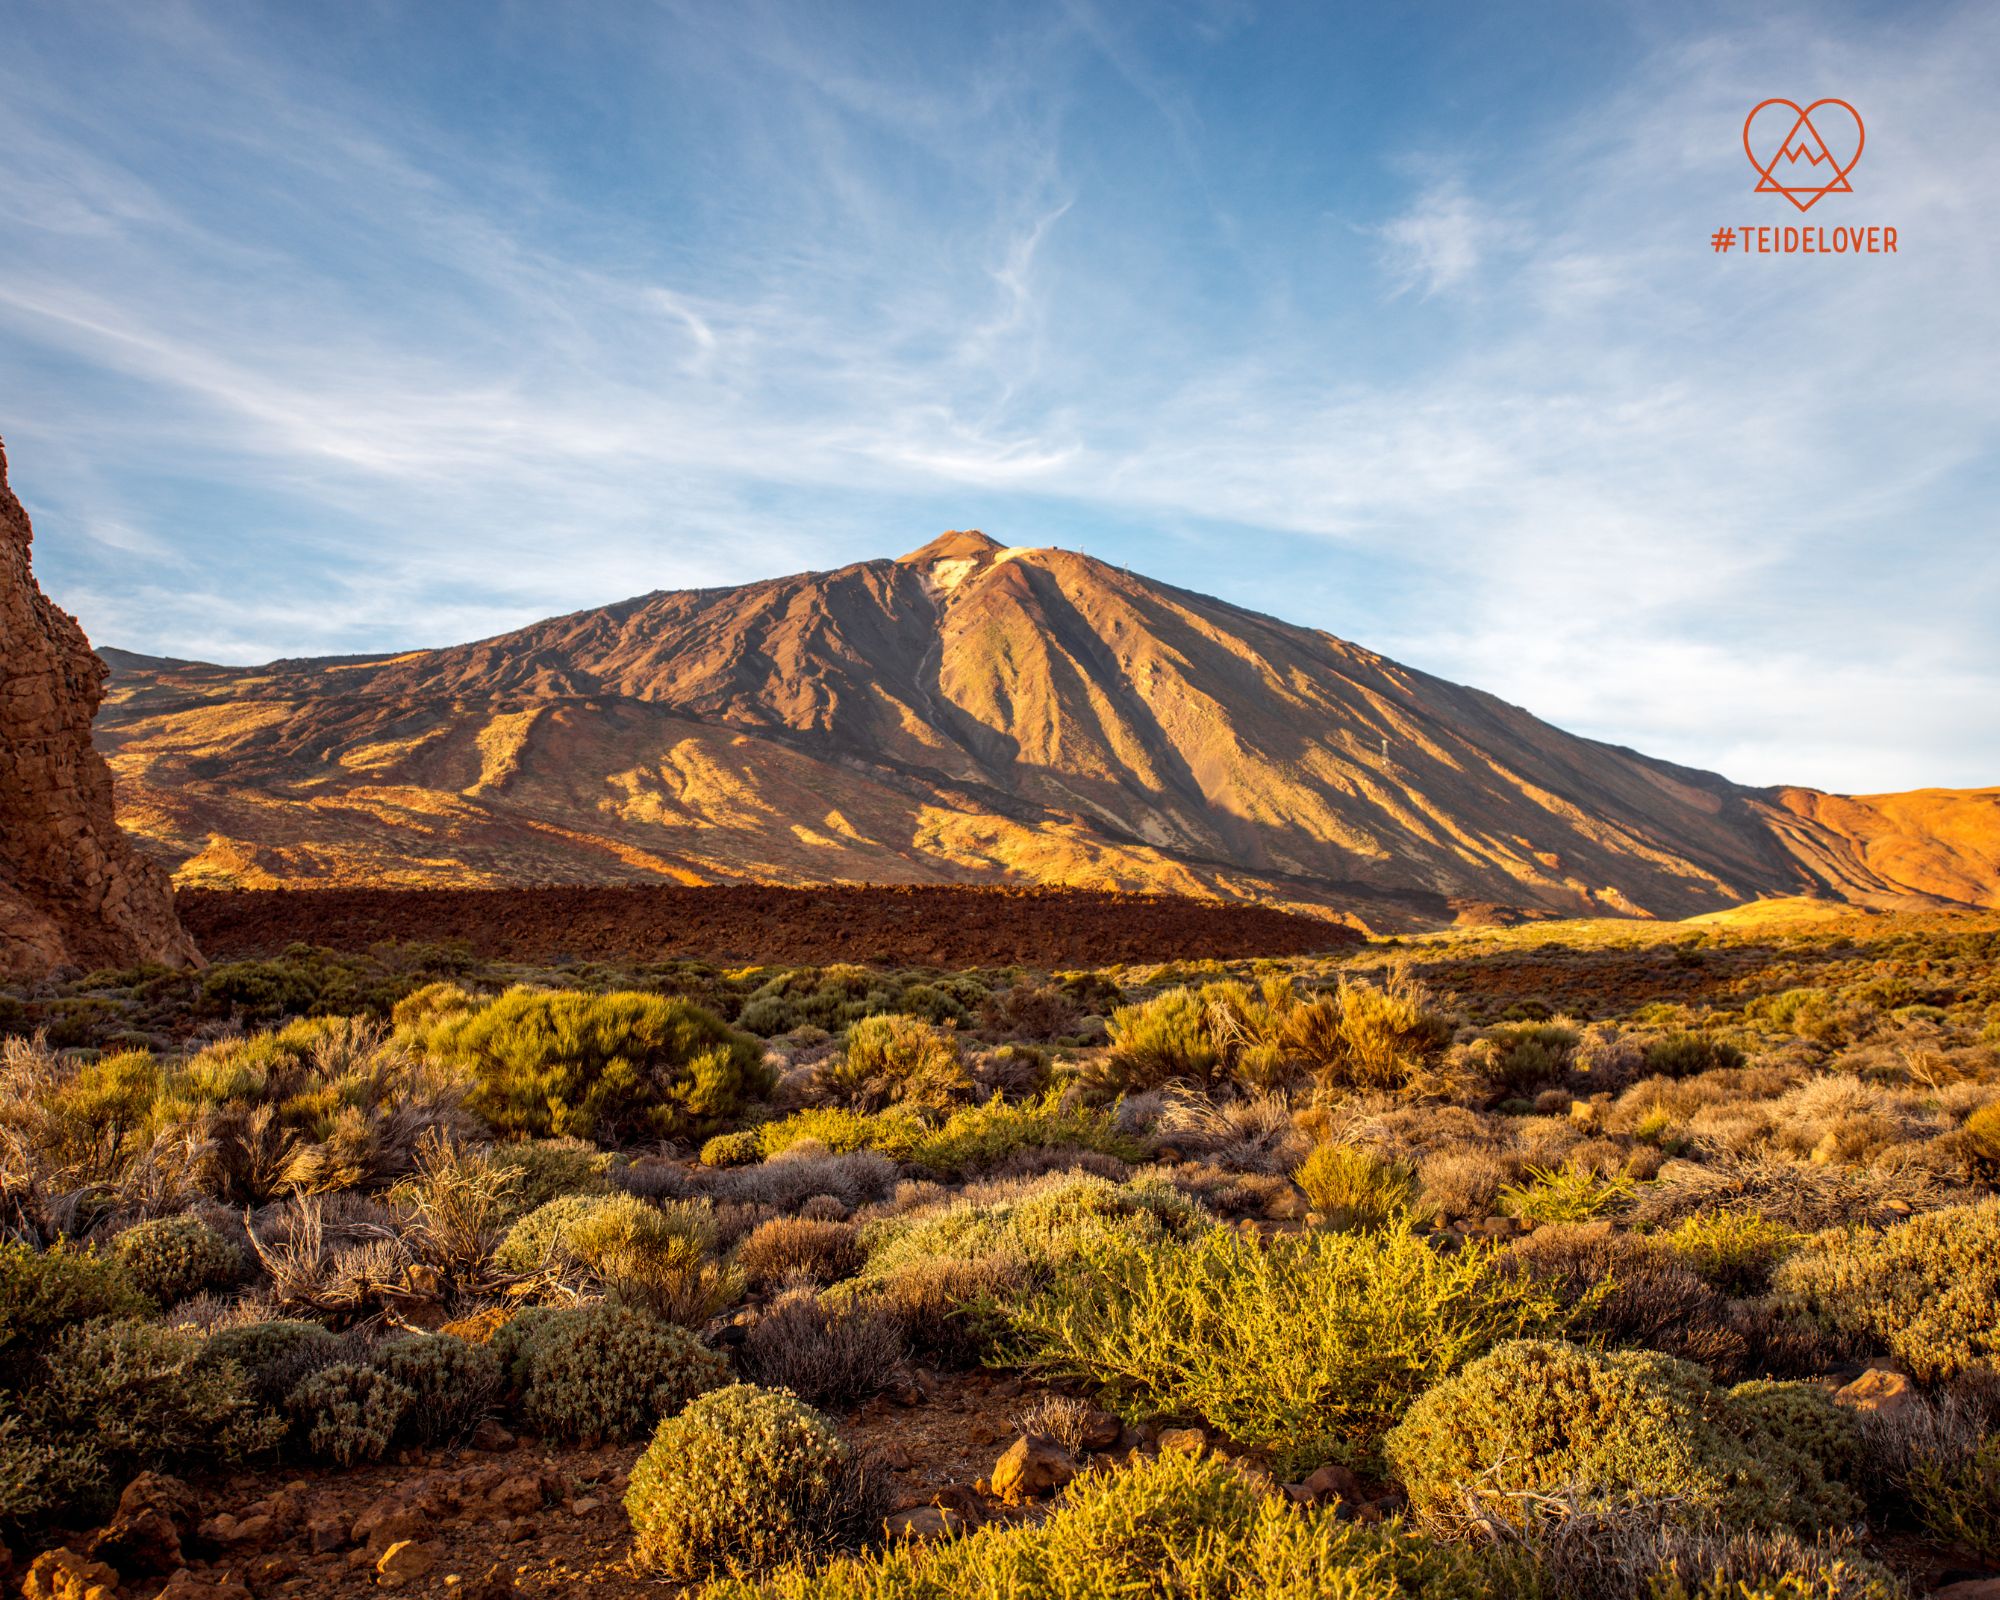 Sostenibilidad: Volcano Teide implementa acciones para conservar la biodiversidad del Teide